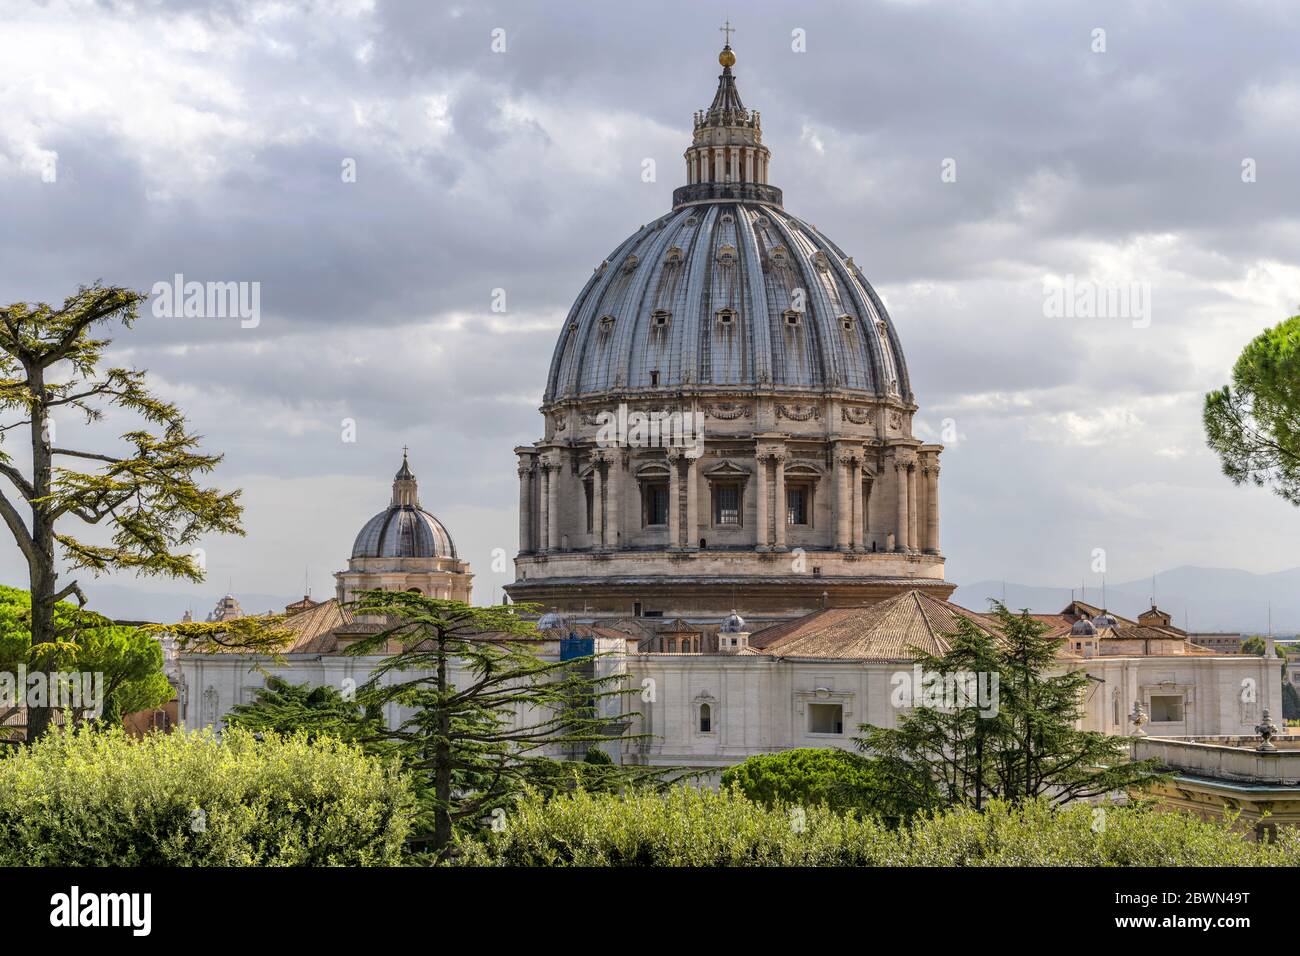 Petersdom - Nahaufnahme der Kuppel des Petersdoms, von den Vatikanischen Gärten aus gesehen, an einem bewölkten Oktobermorgen. Vatikanstadt, Rom. Stockfoto